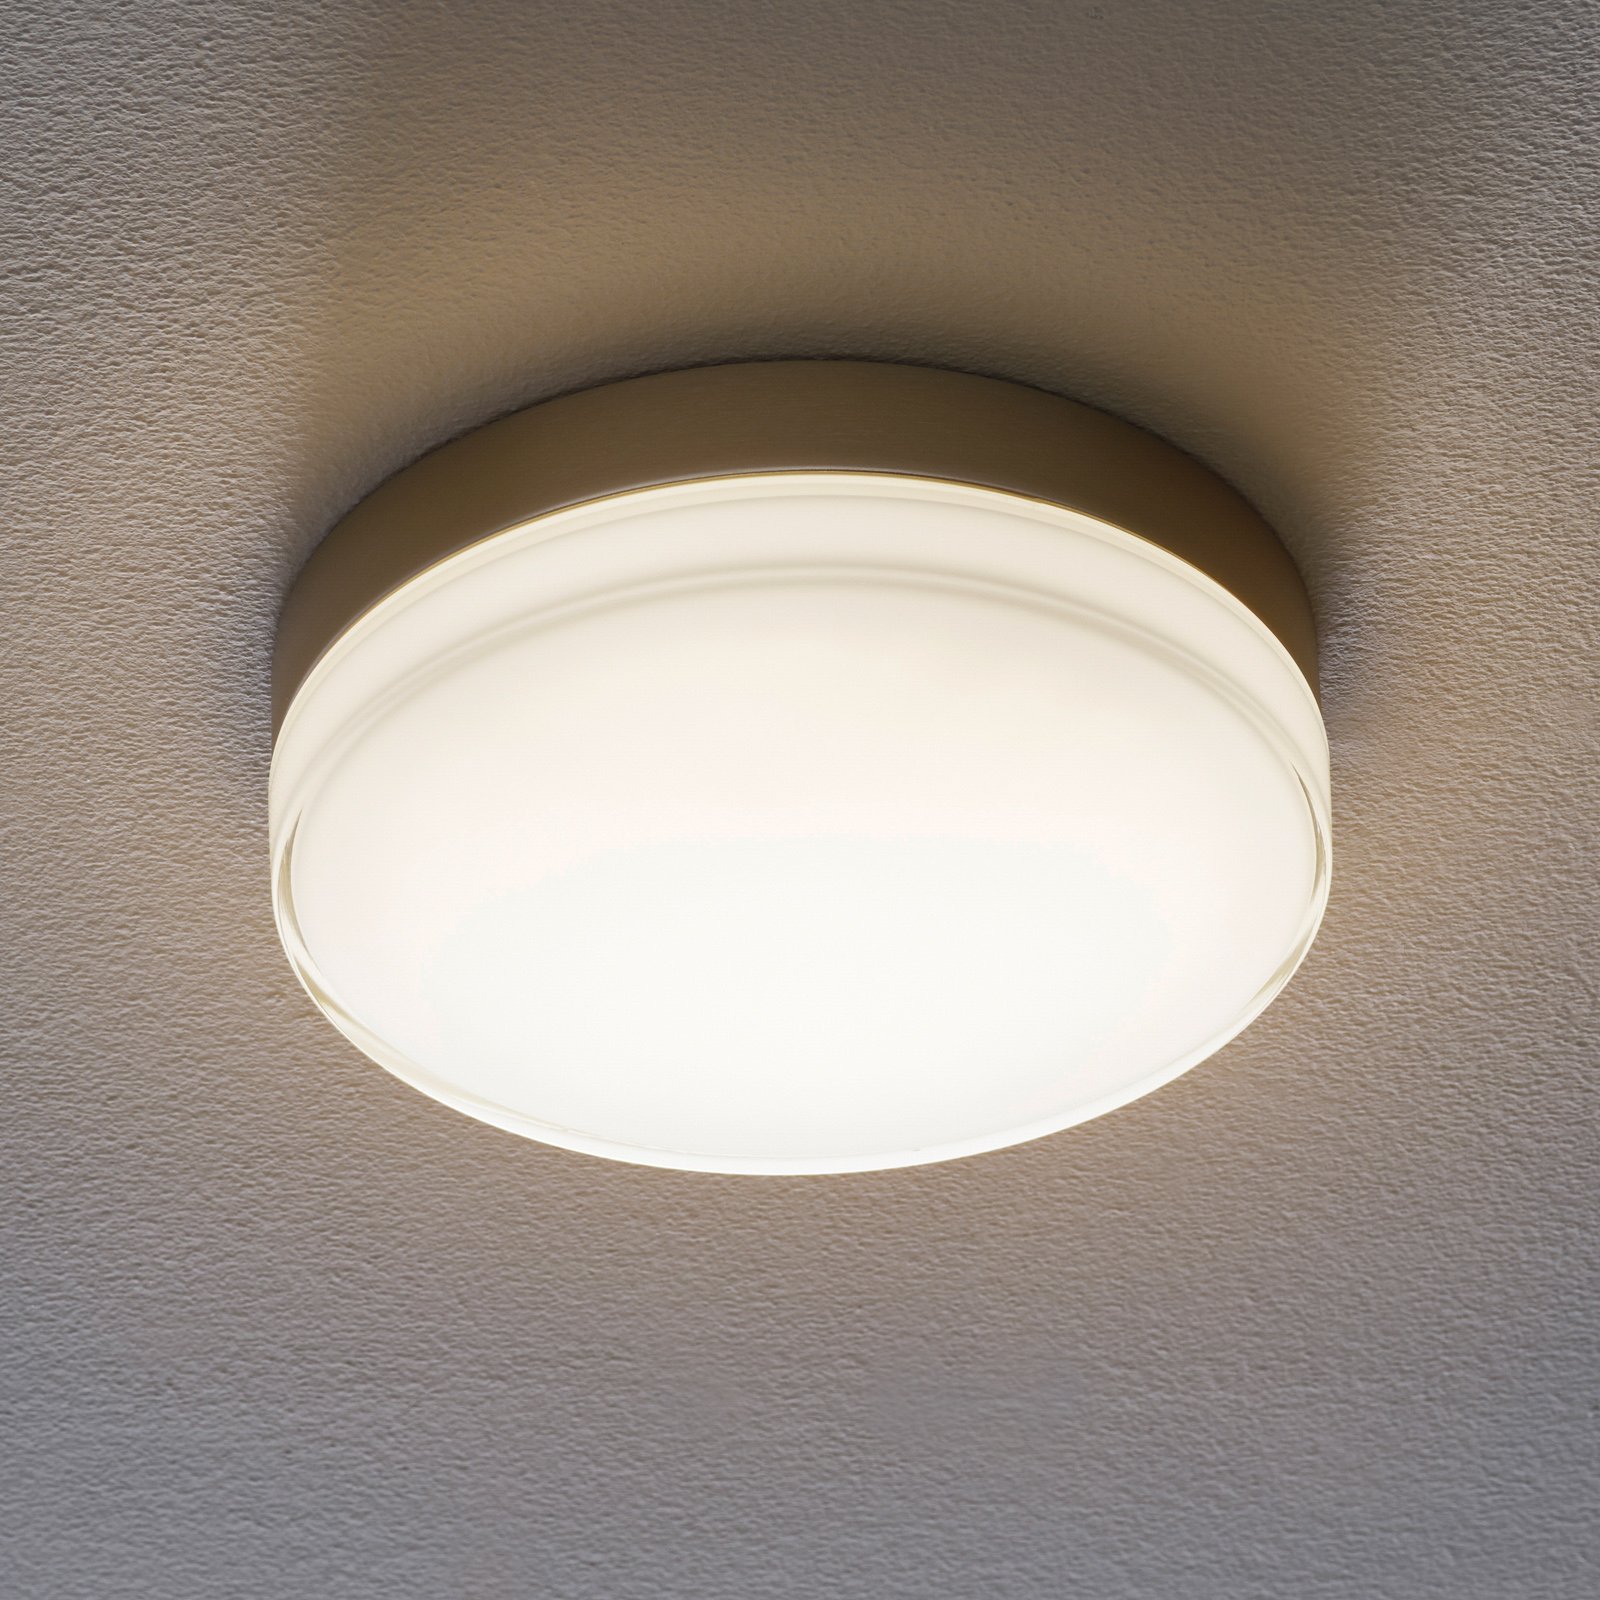 BEGA 12128 LED ceiling light DALI 930 steel 26 cm